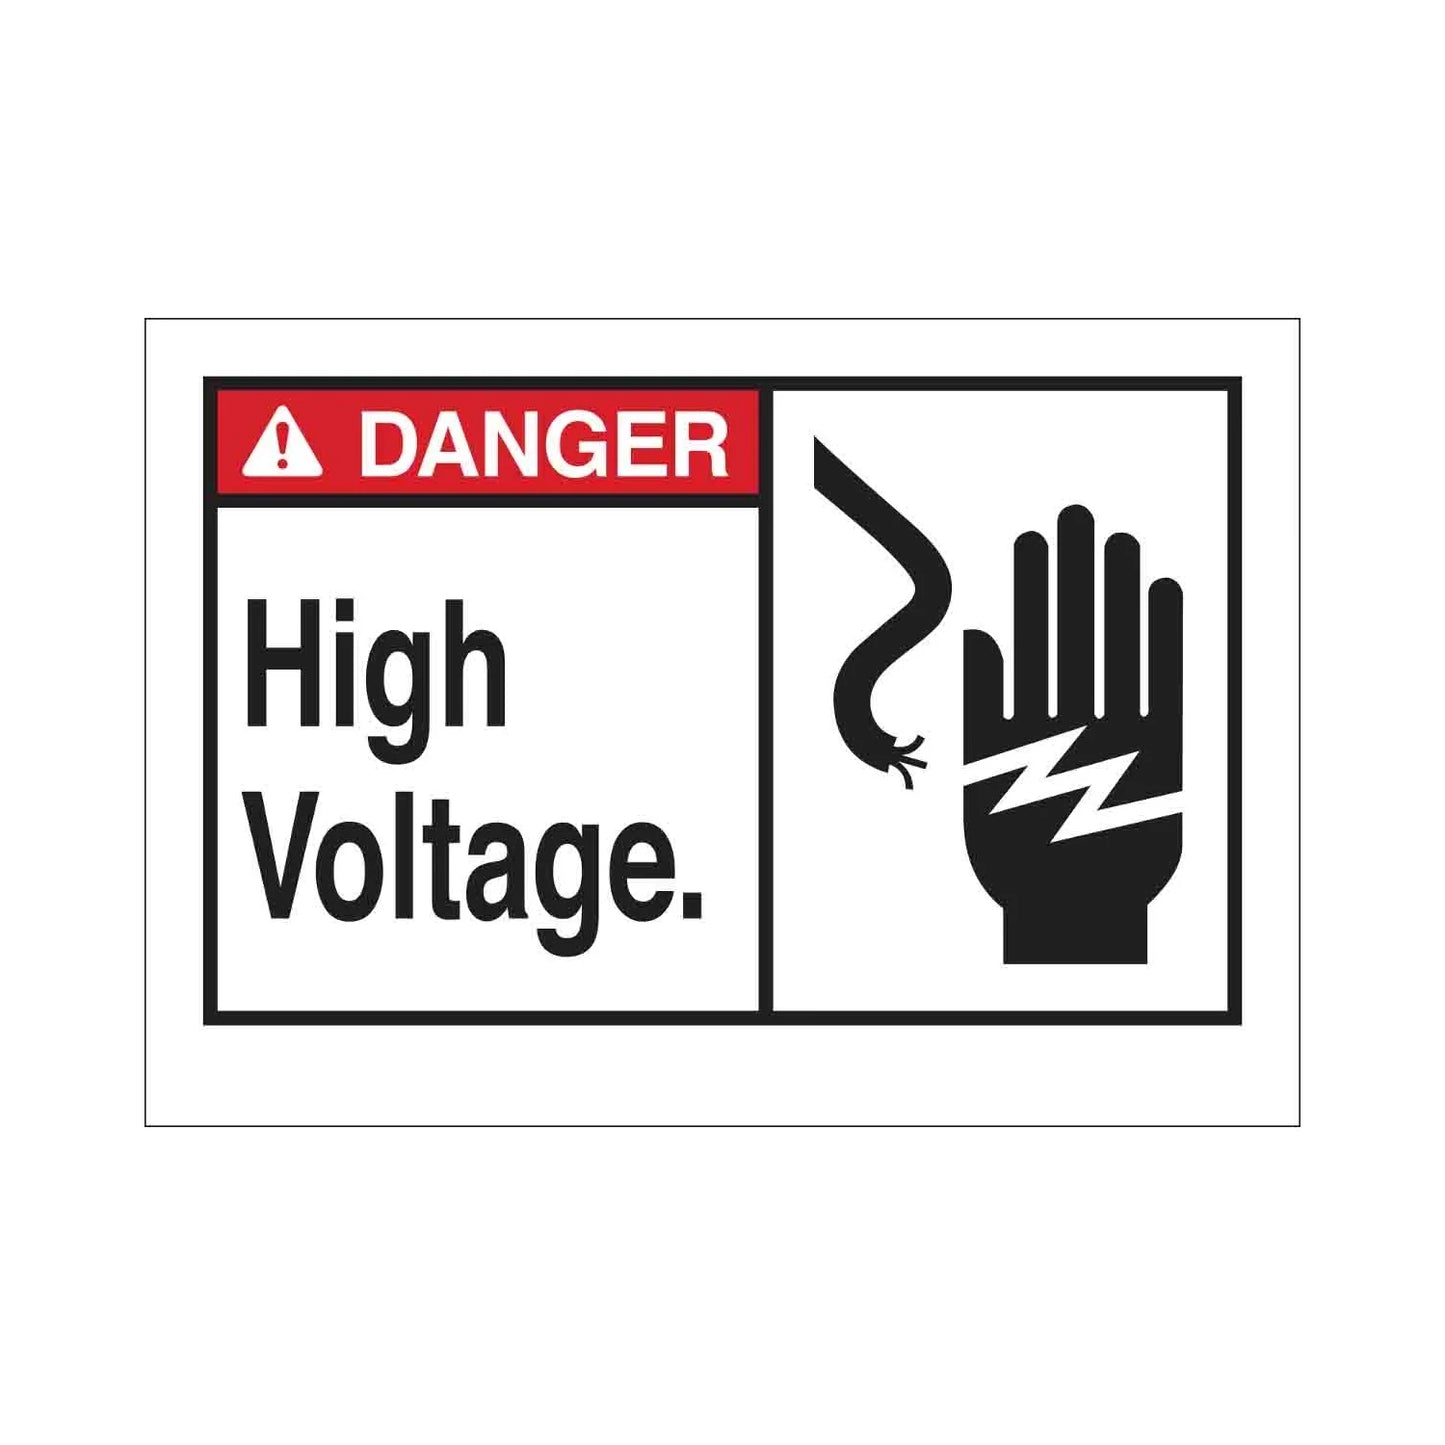 DANGER High Voltage. Sign